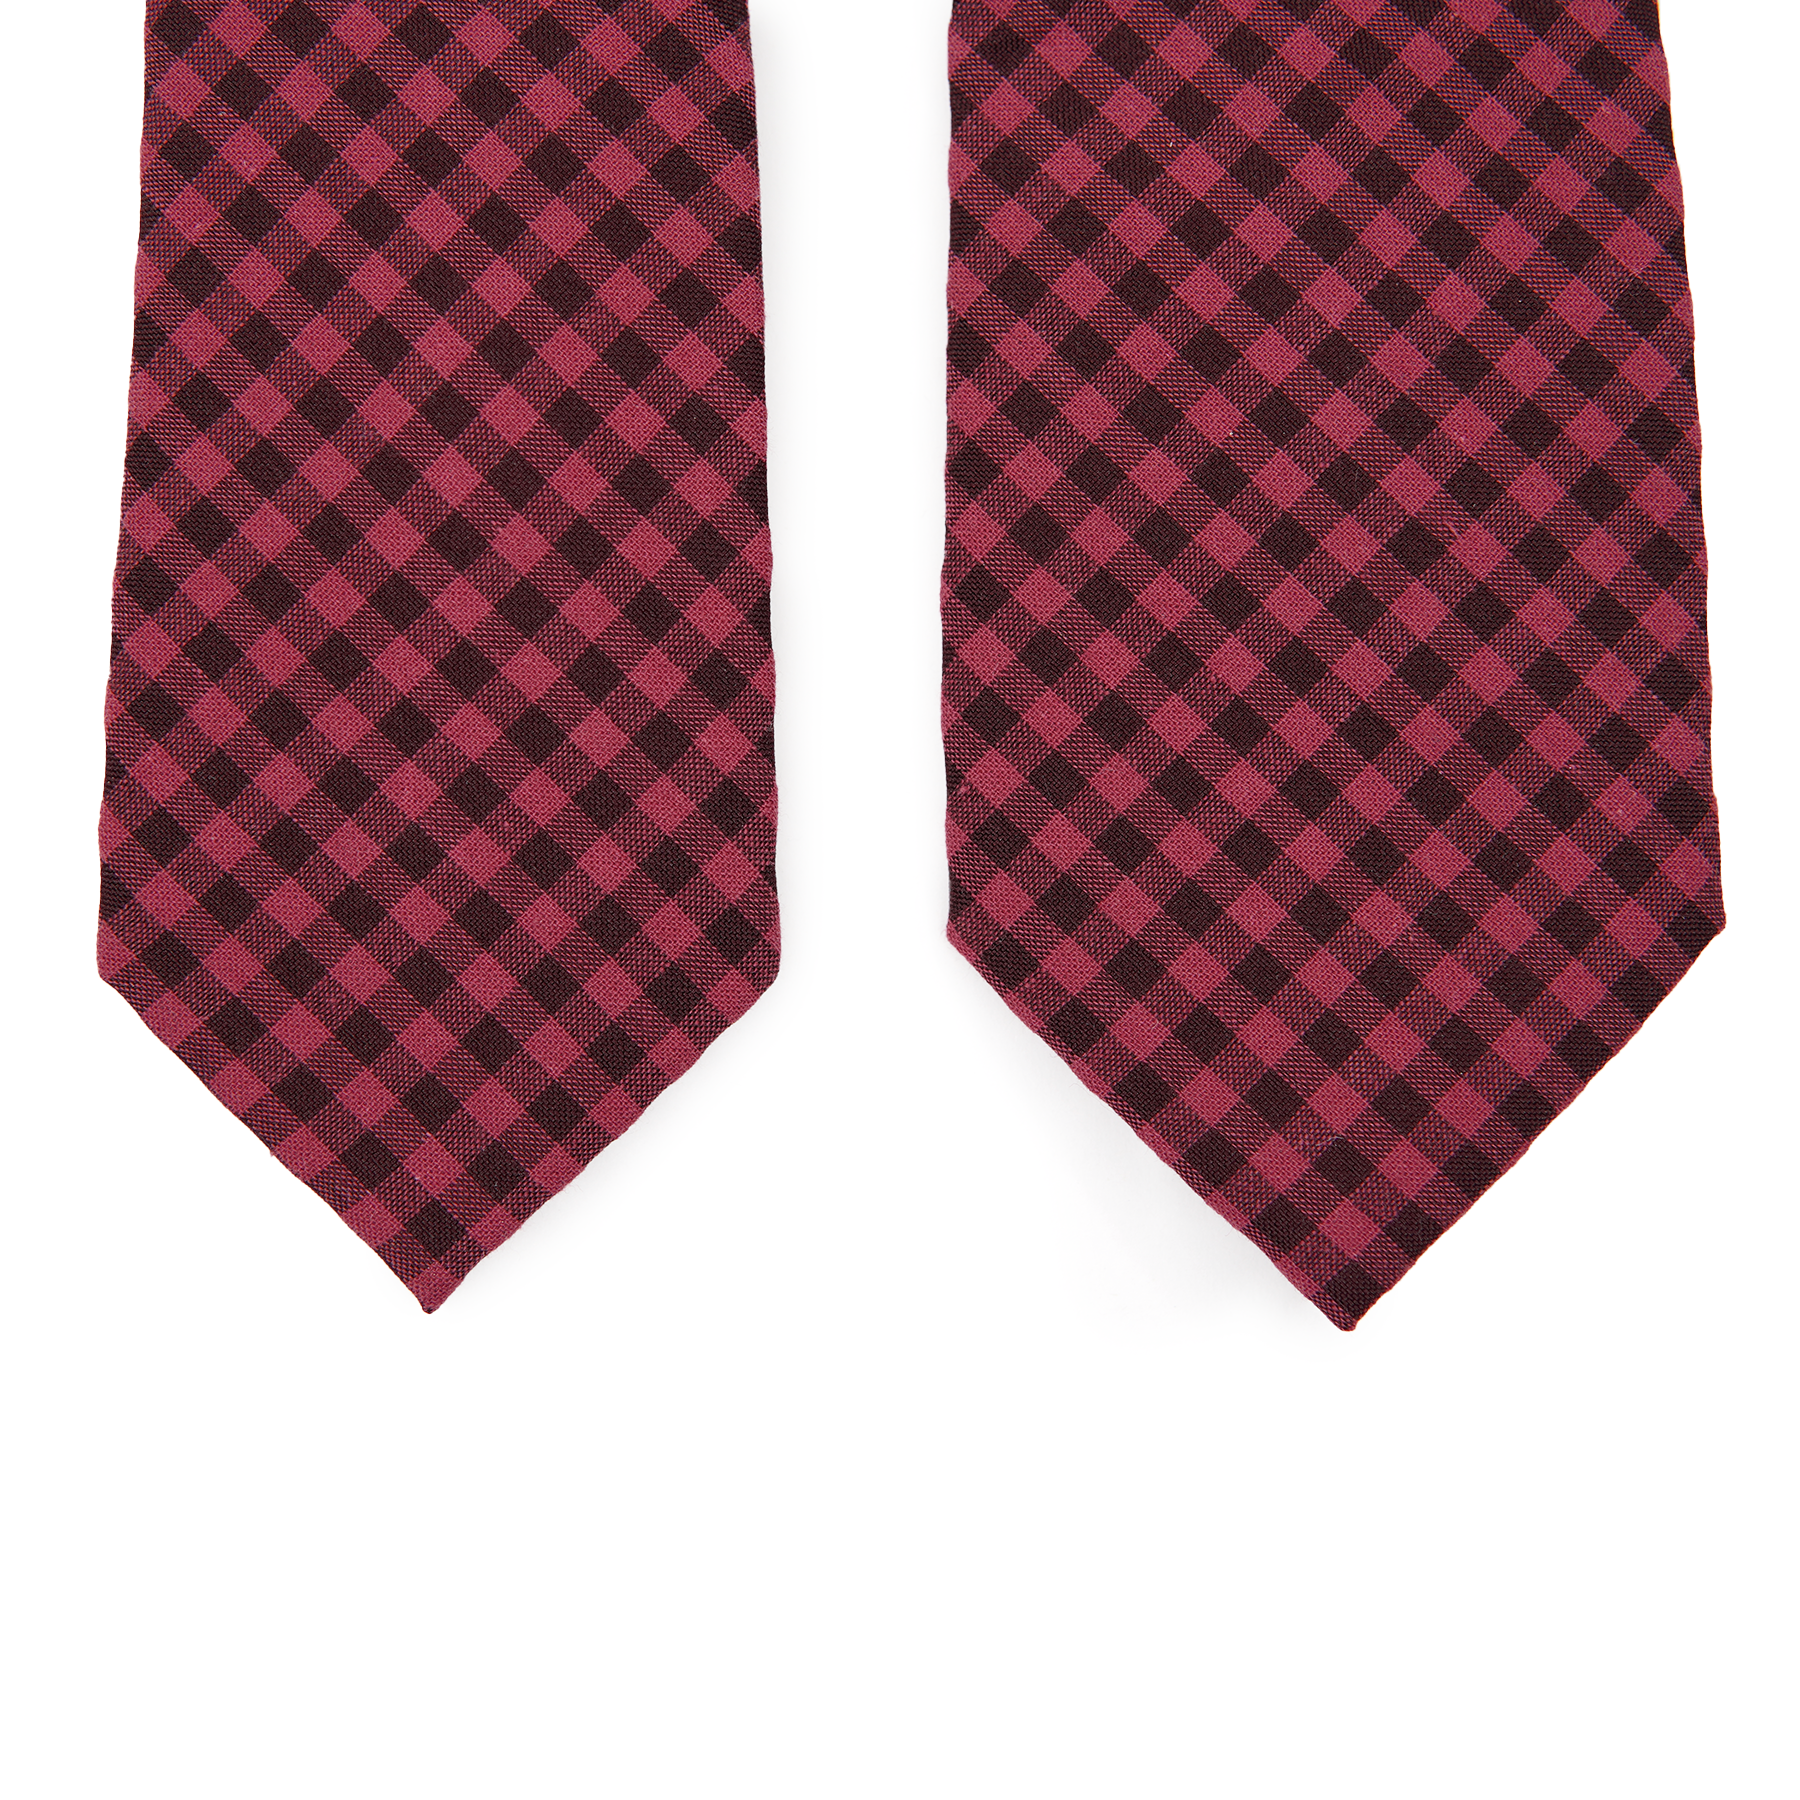 Razzleberry - Men's Tie